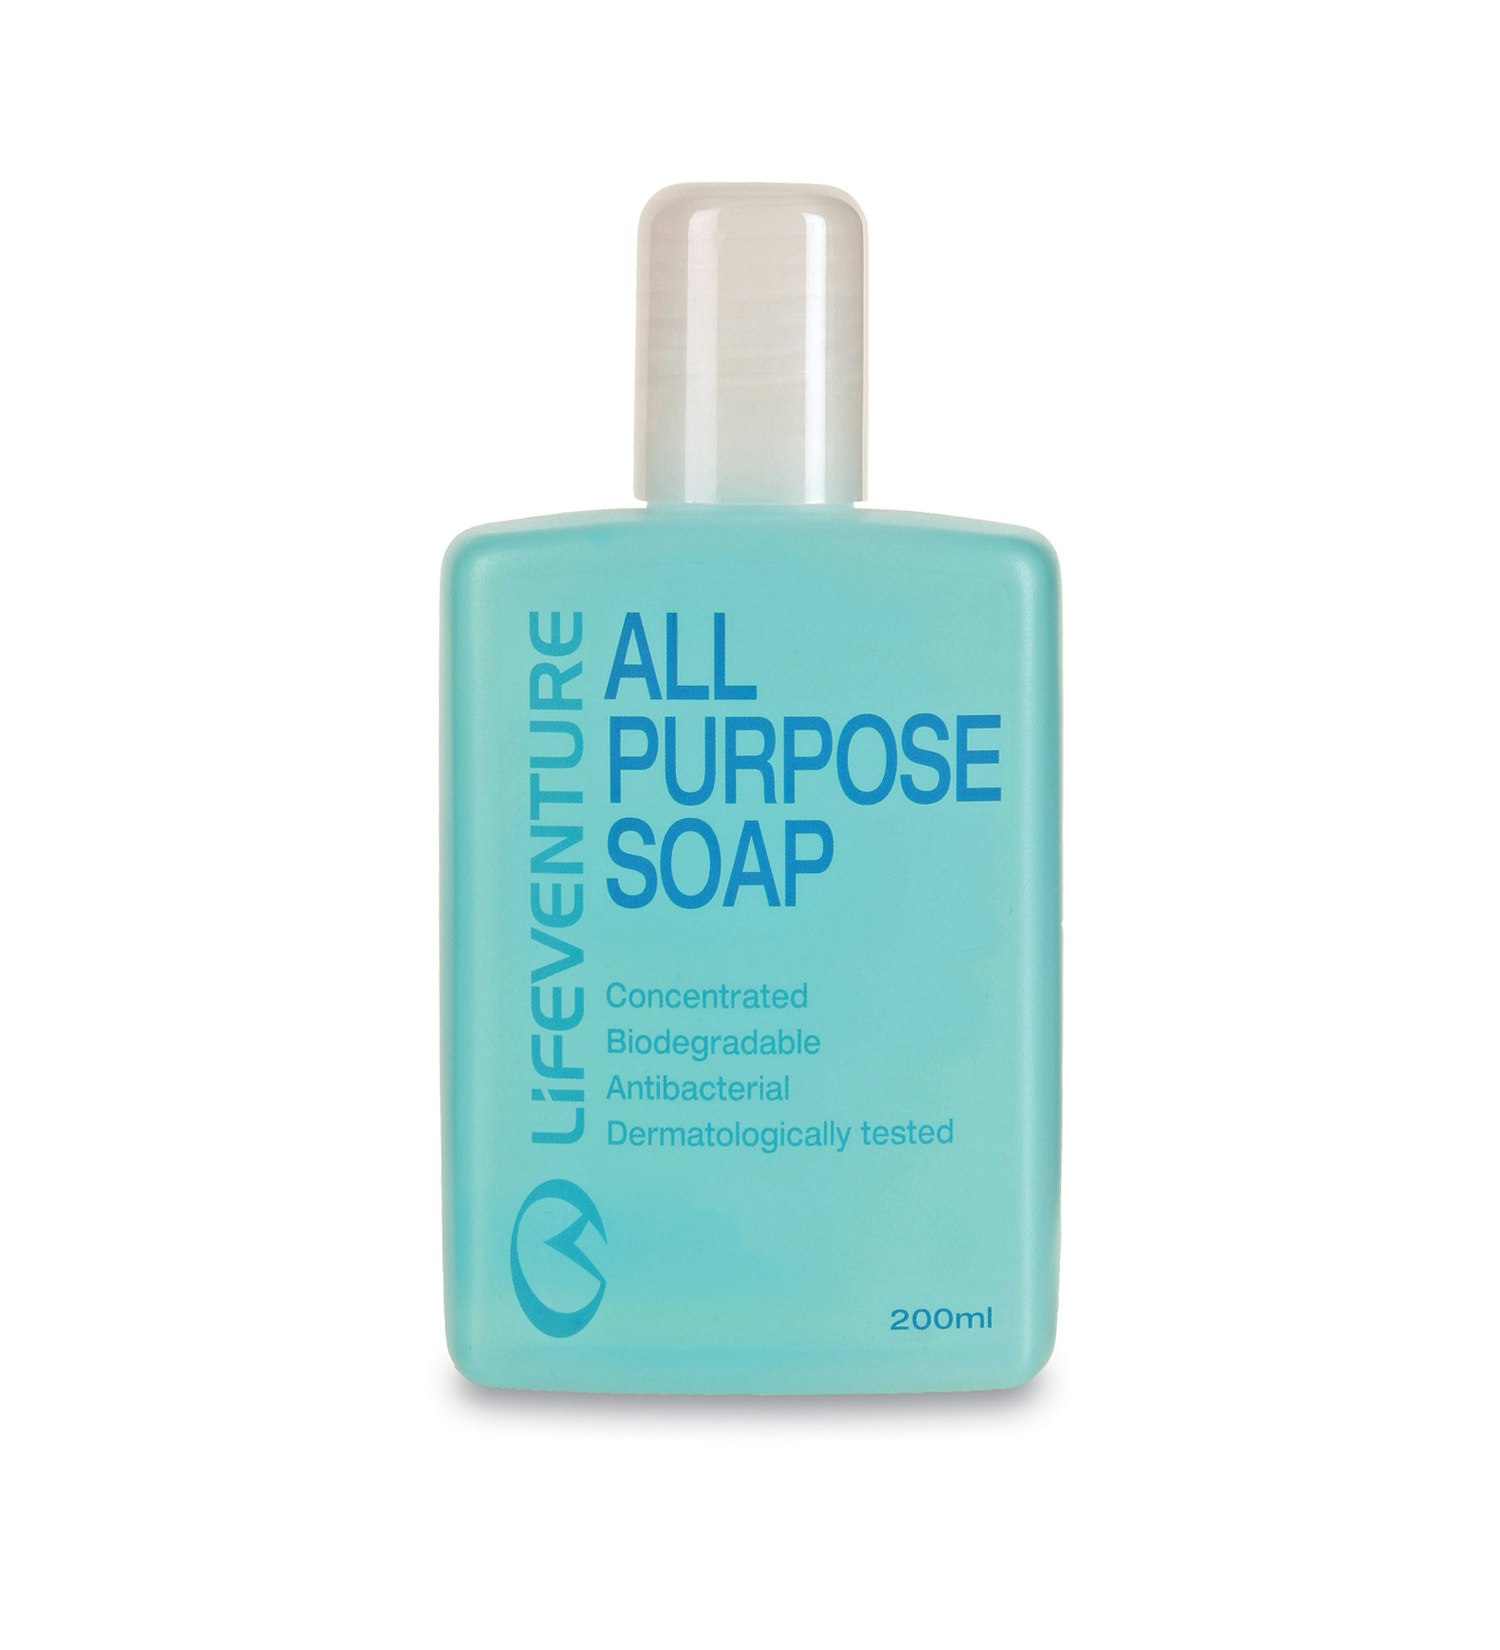 Lifeventure(r) All Purpose Biodegradable Soap 200ml